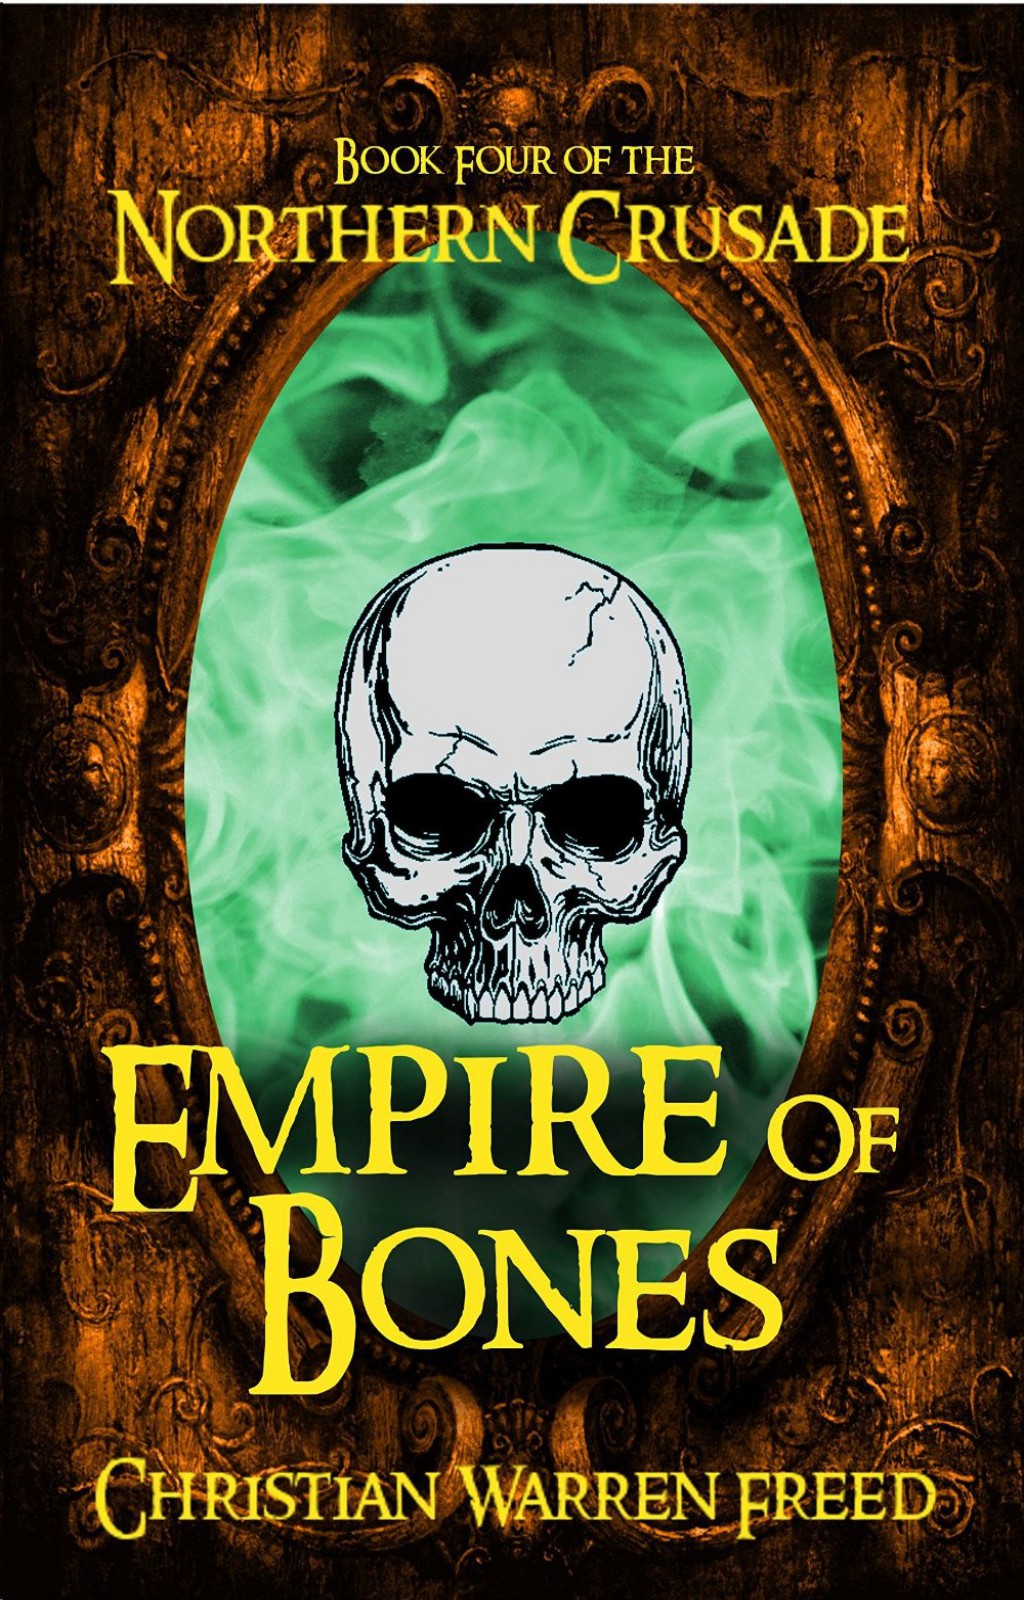 Empire of Bones